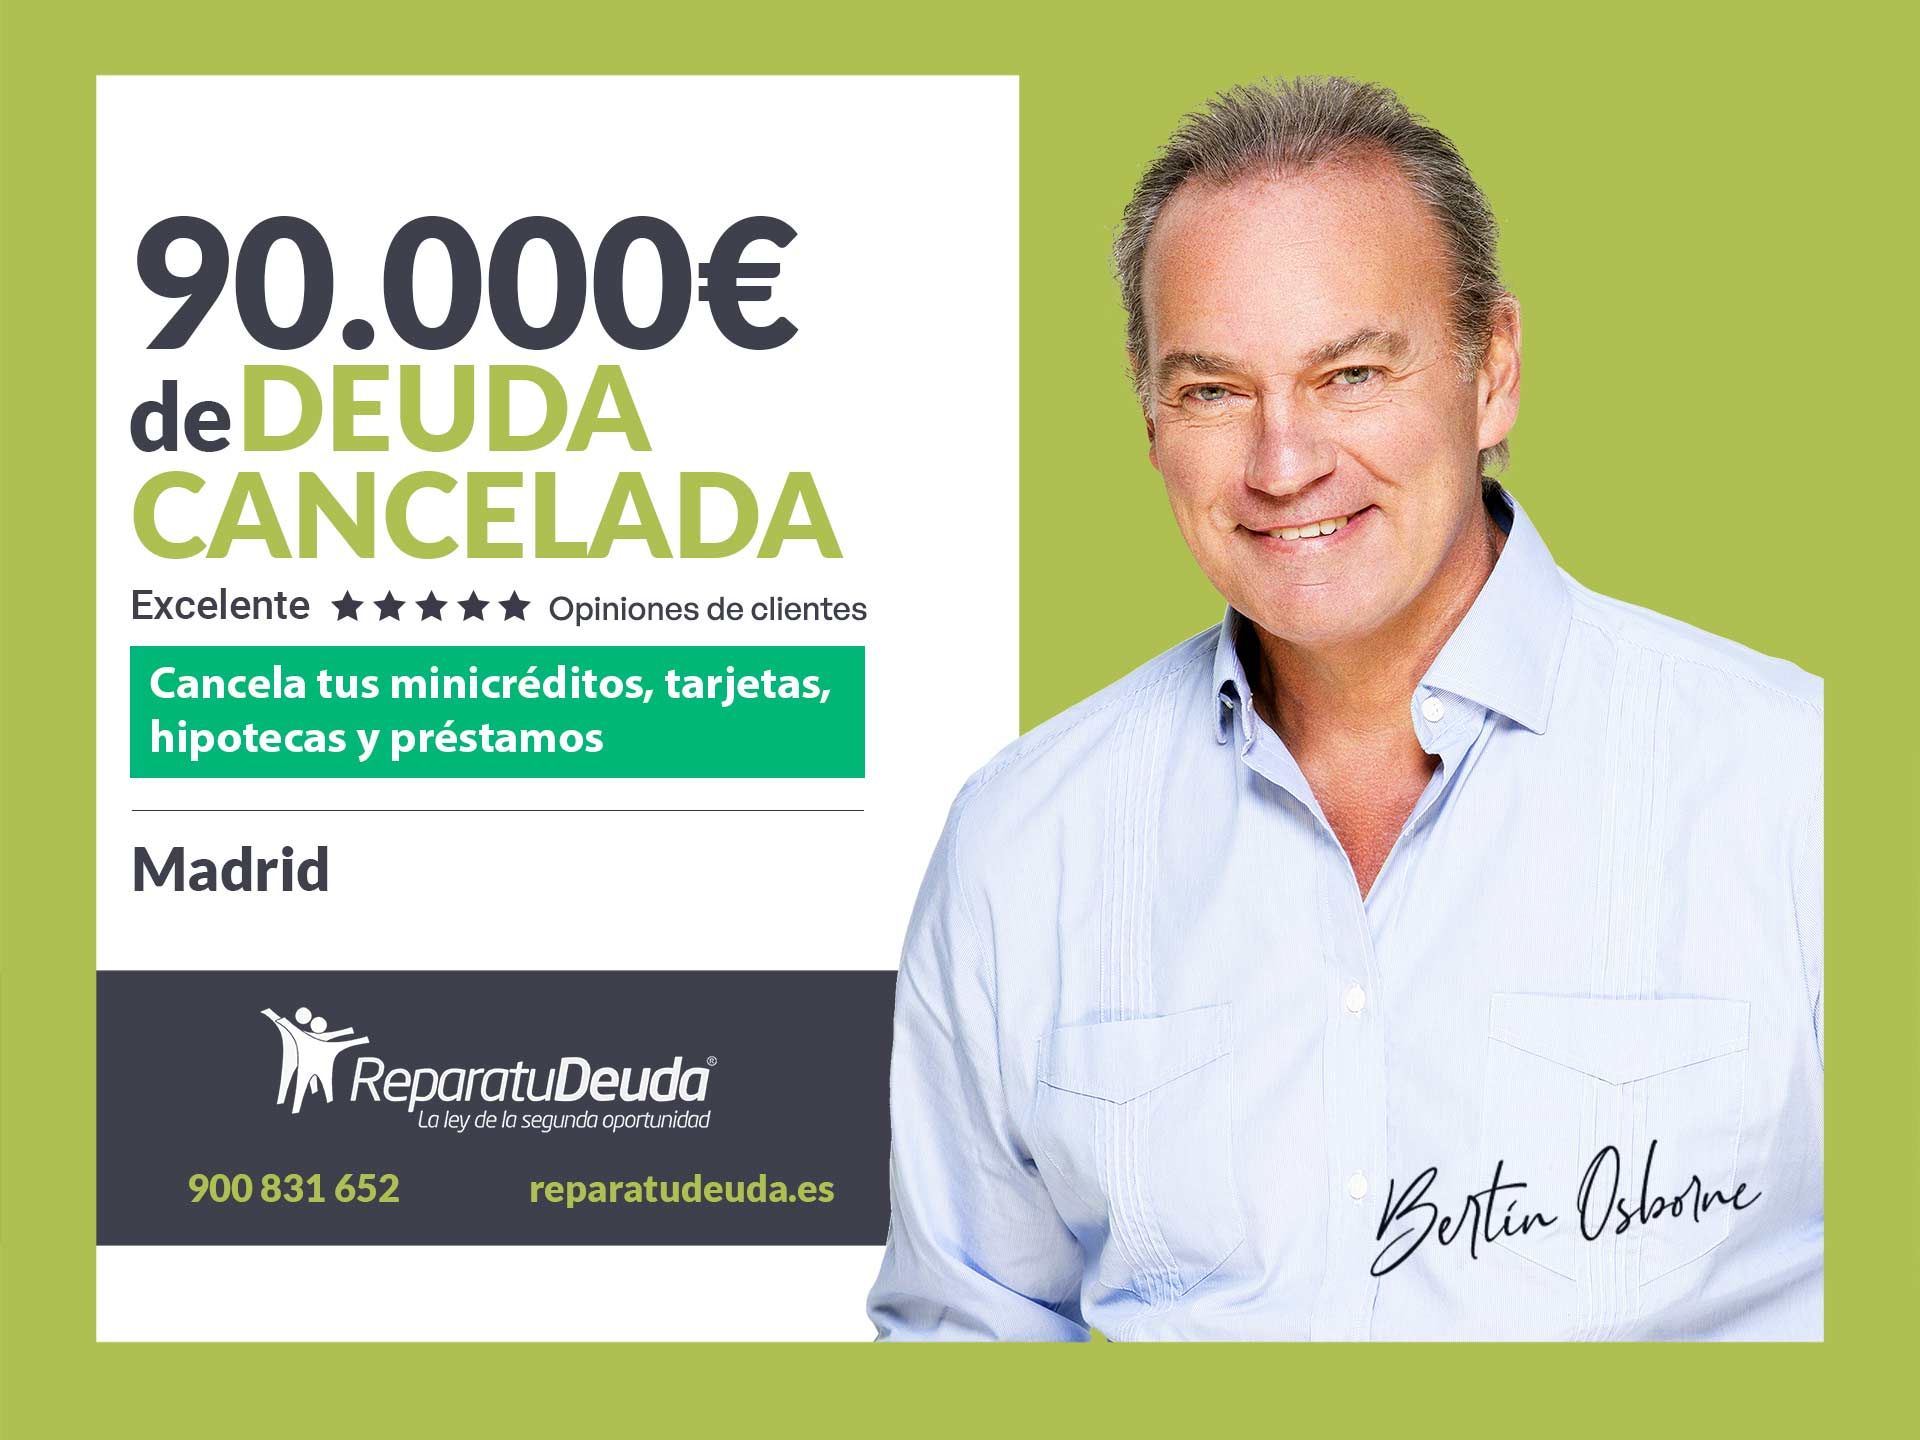 Repara tu Deuda Abogados cancela 90.000? en Madrid con la Ley de Segunda Oportunidad